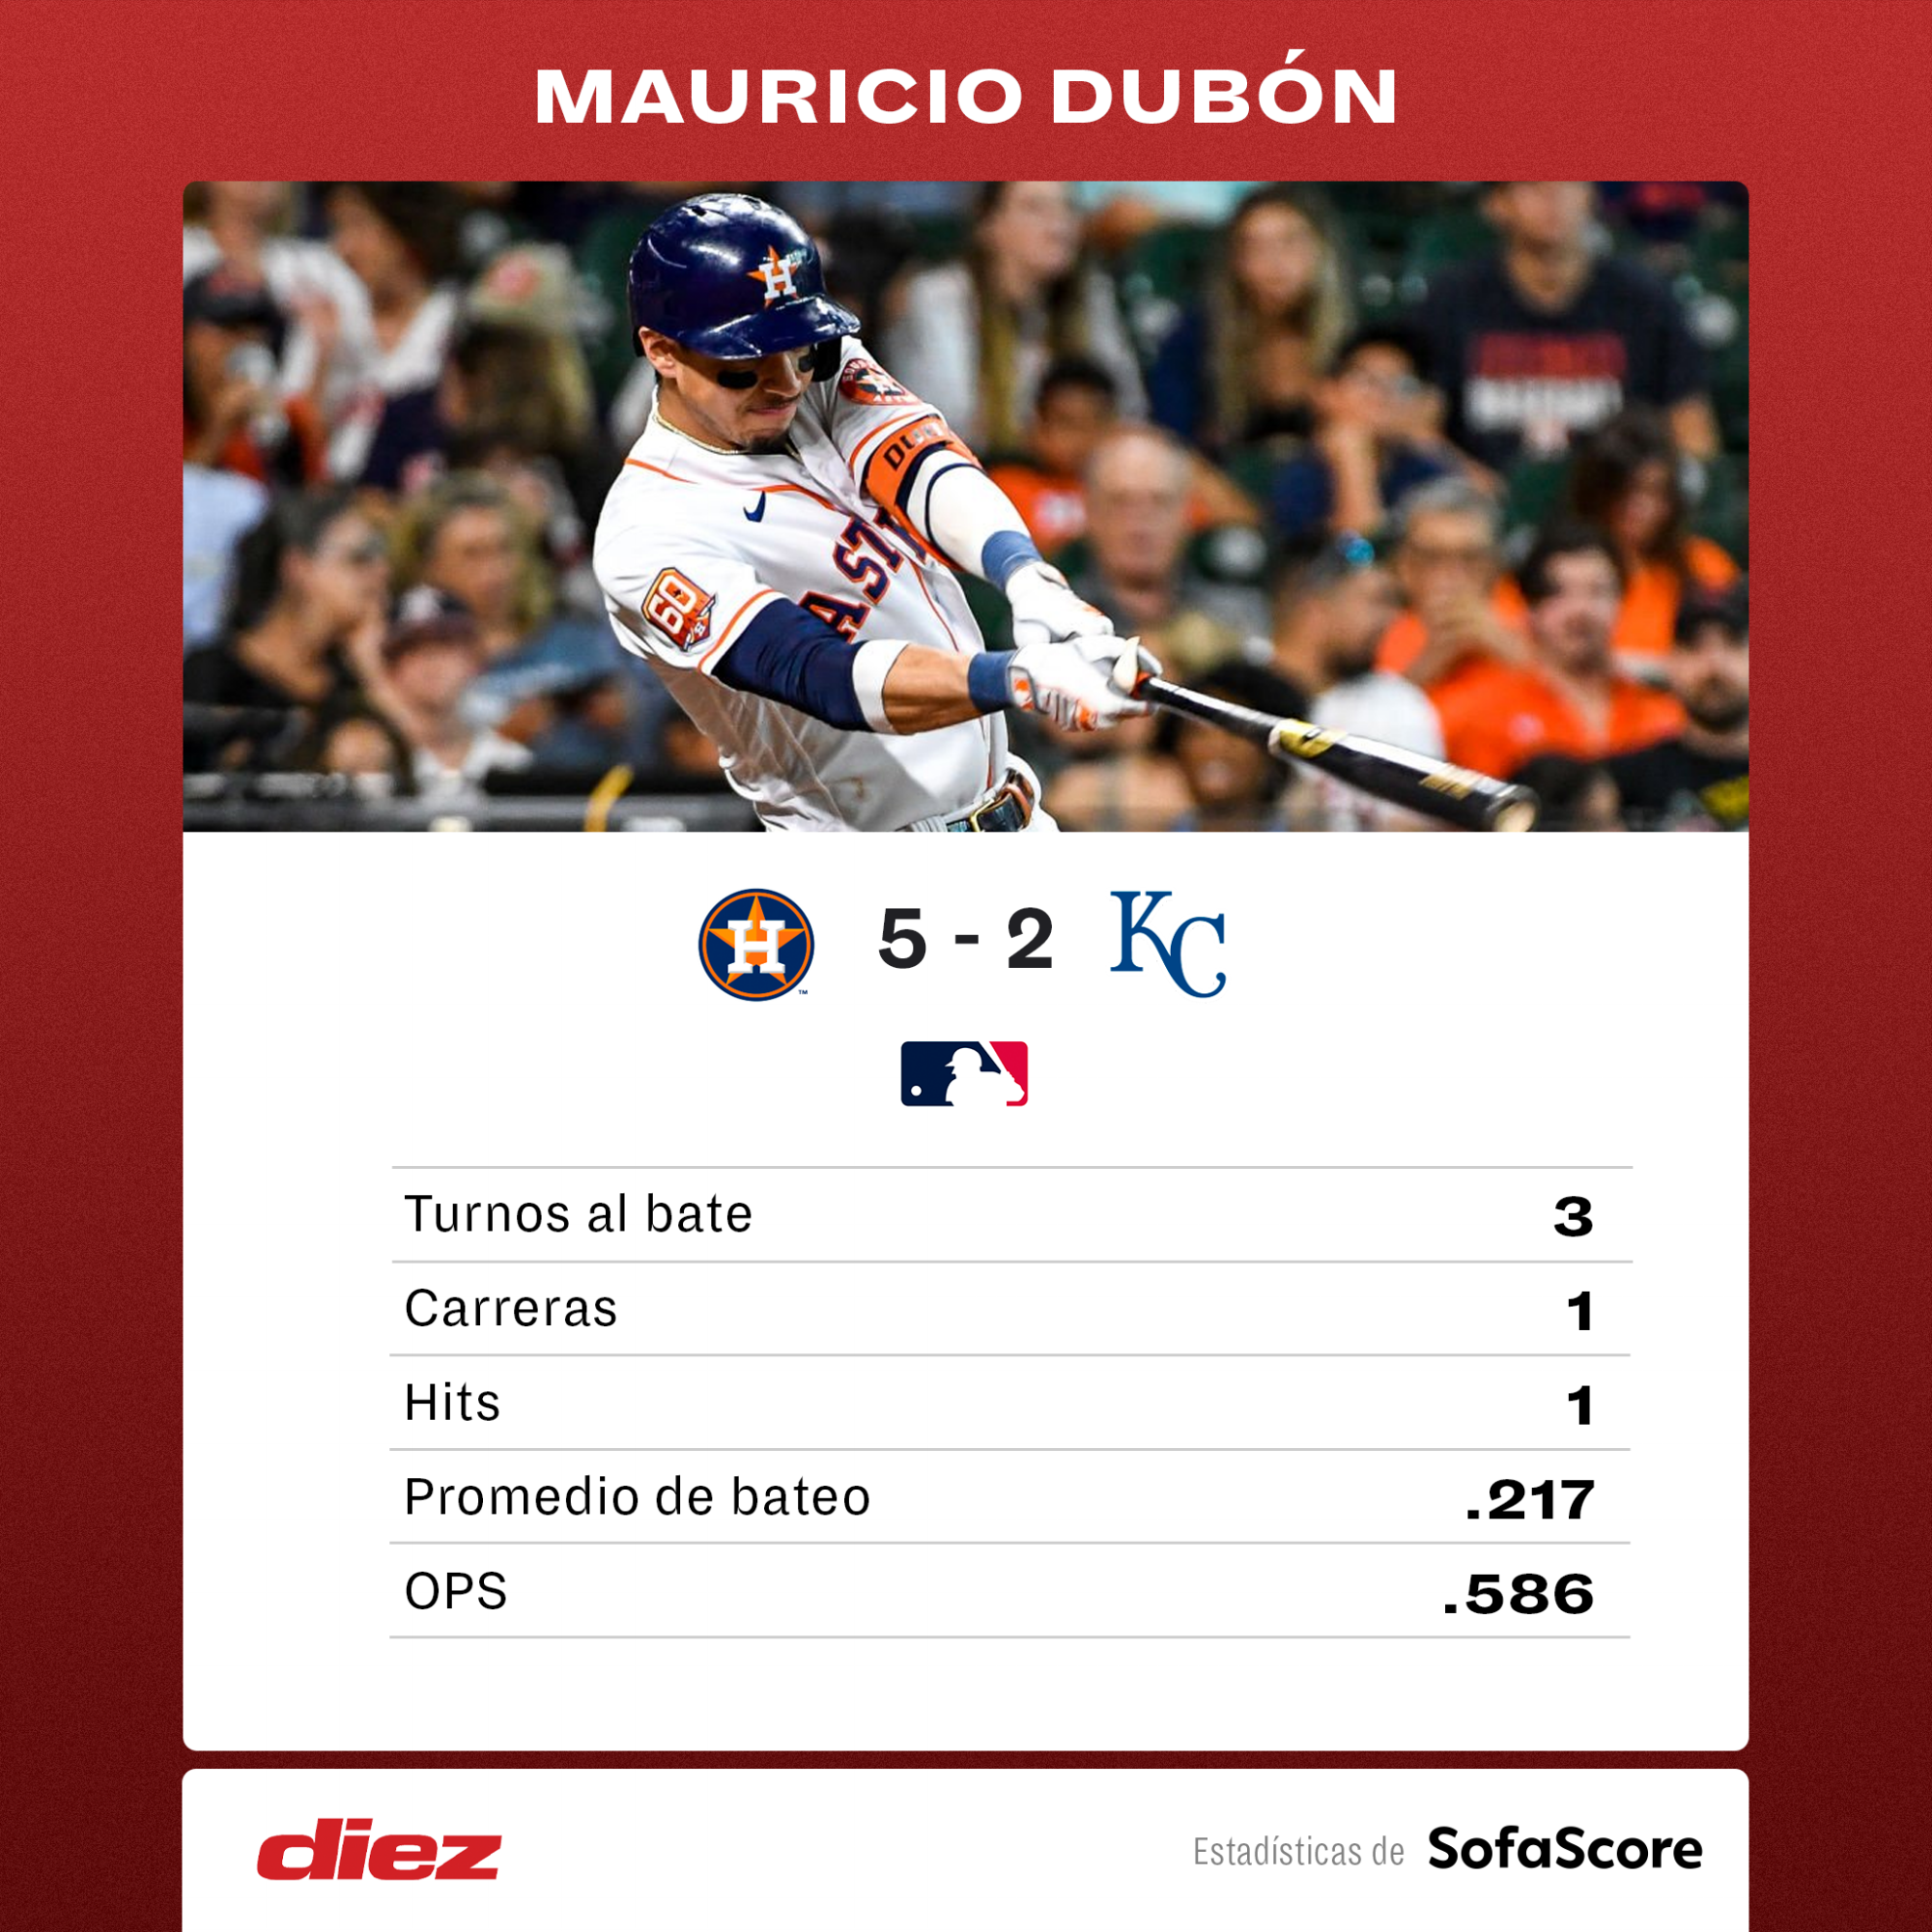 Mauricio Dubón se luce con hit y carrera con Astros que finiquitan serie ante Royals en